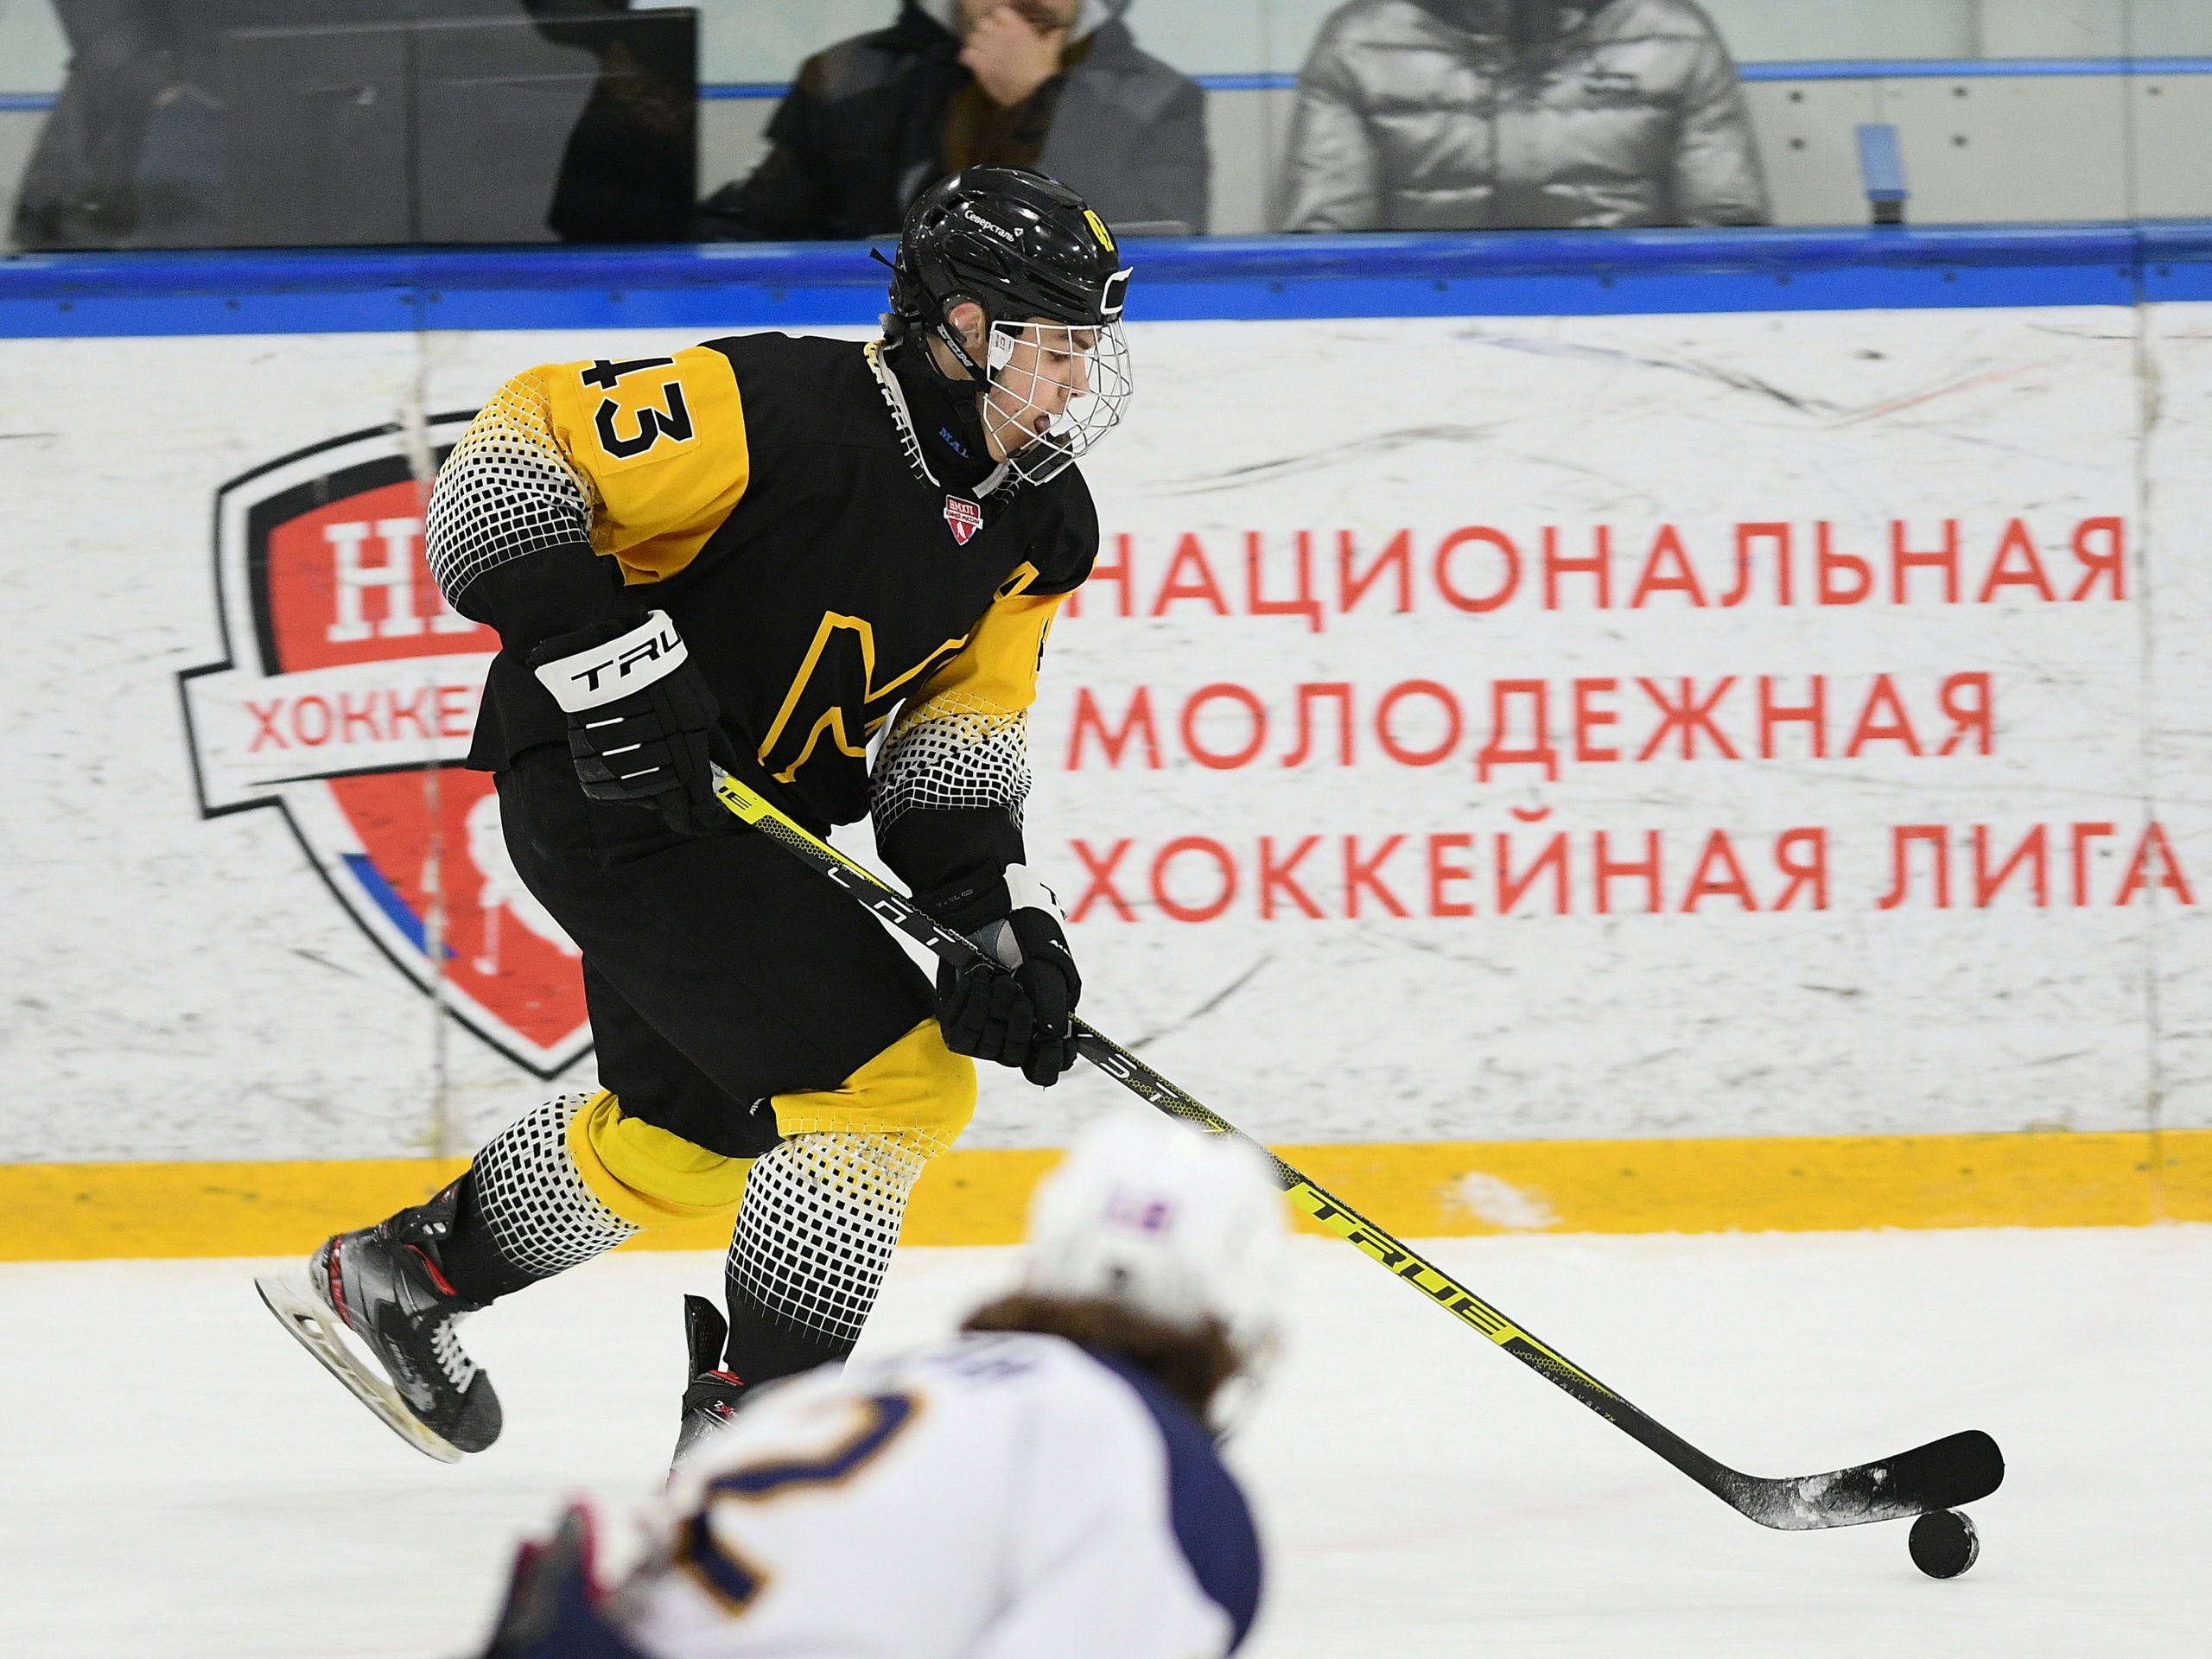 Защитник Скрынченко Александр подвёл итоги матча с командой «Видное»